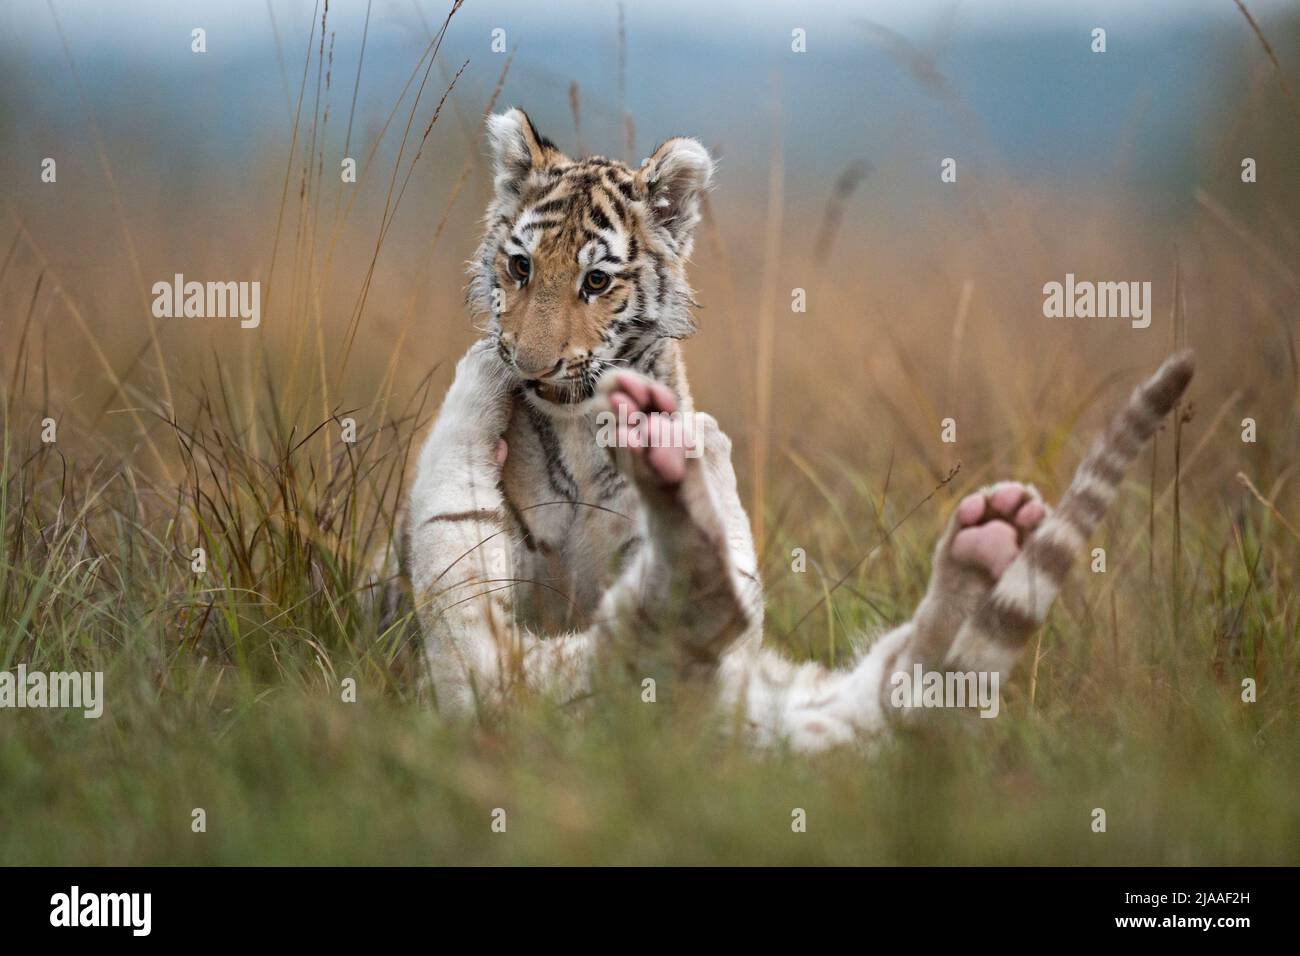 Royal Bengala Tigers / Koenigstiger ( Panthera tigris ), giovani fratelli, giocare, wrestling, rompicando in erba alta, ambiente naturale tipico, divertente Foto Stock